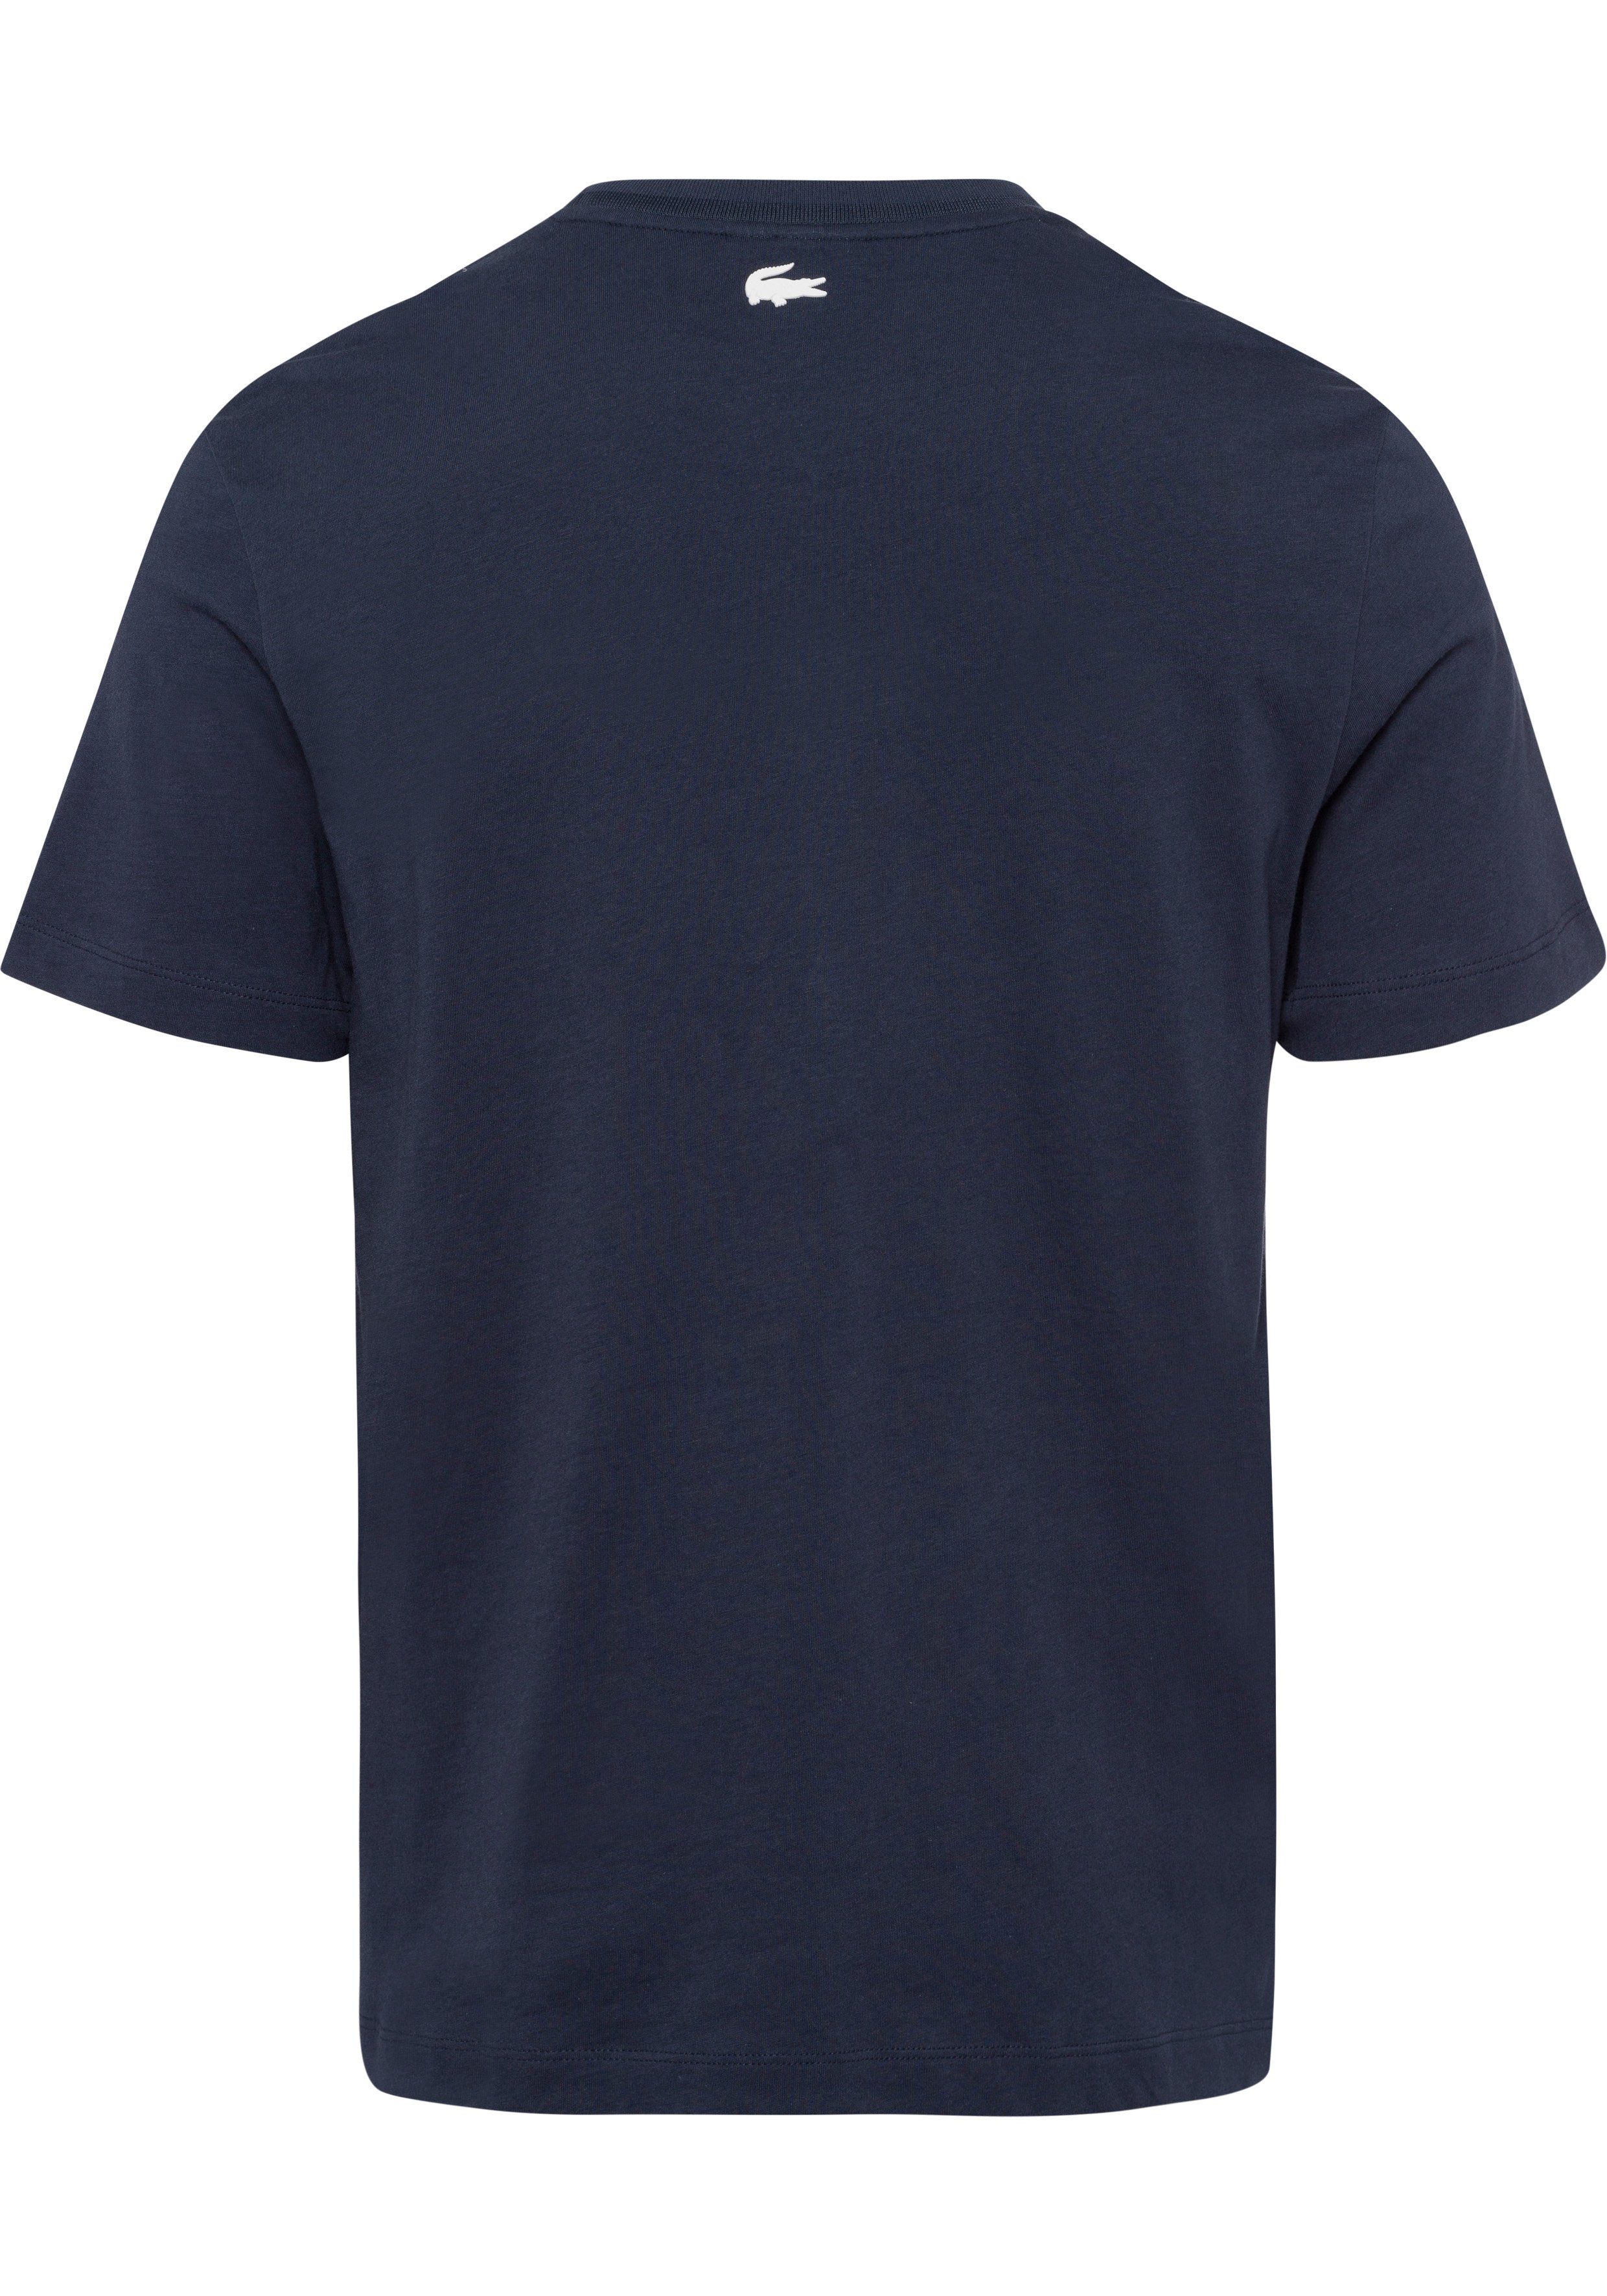 Rundhalsausschnitt mit night blue T-Shirt Lacoste